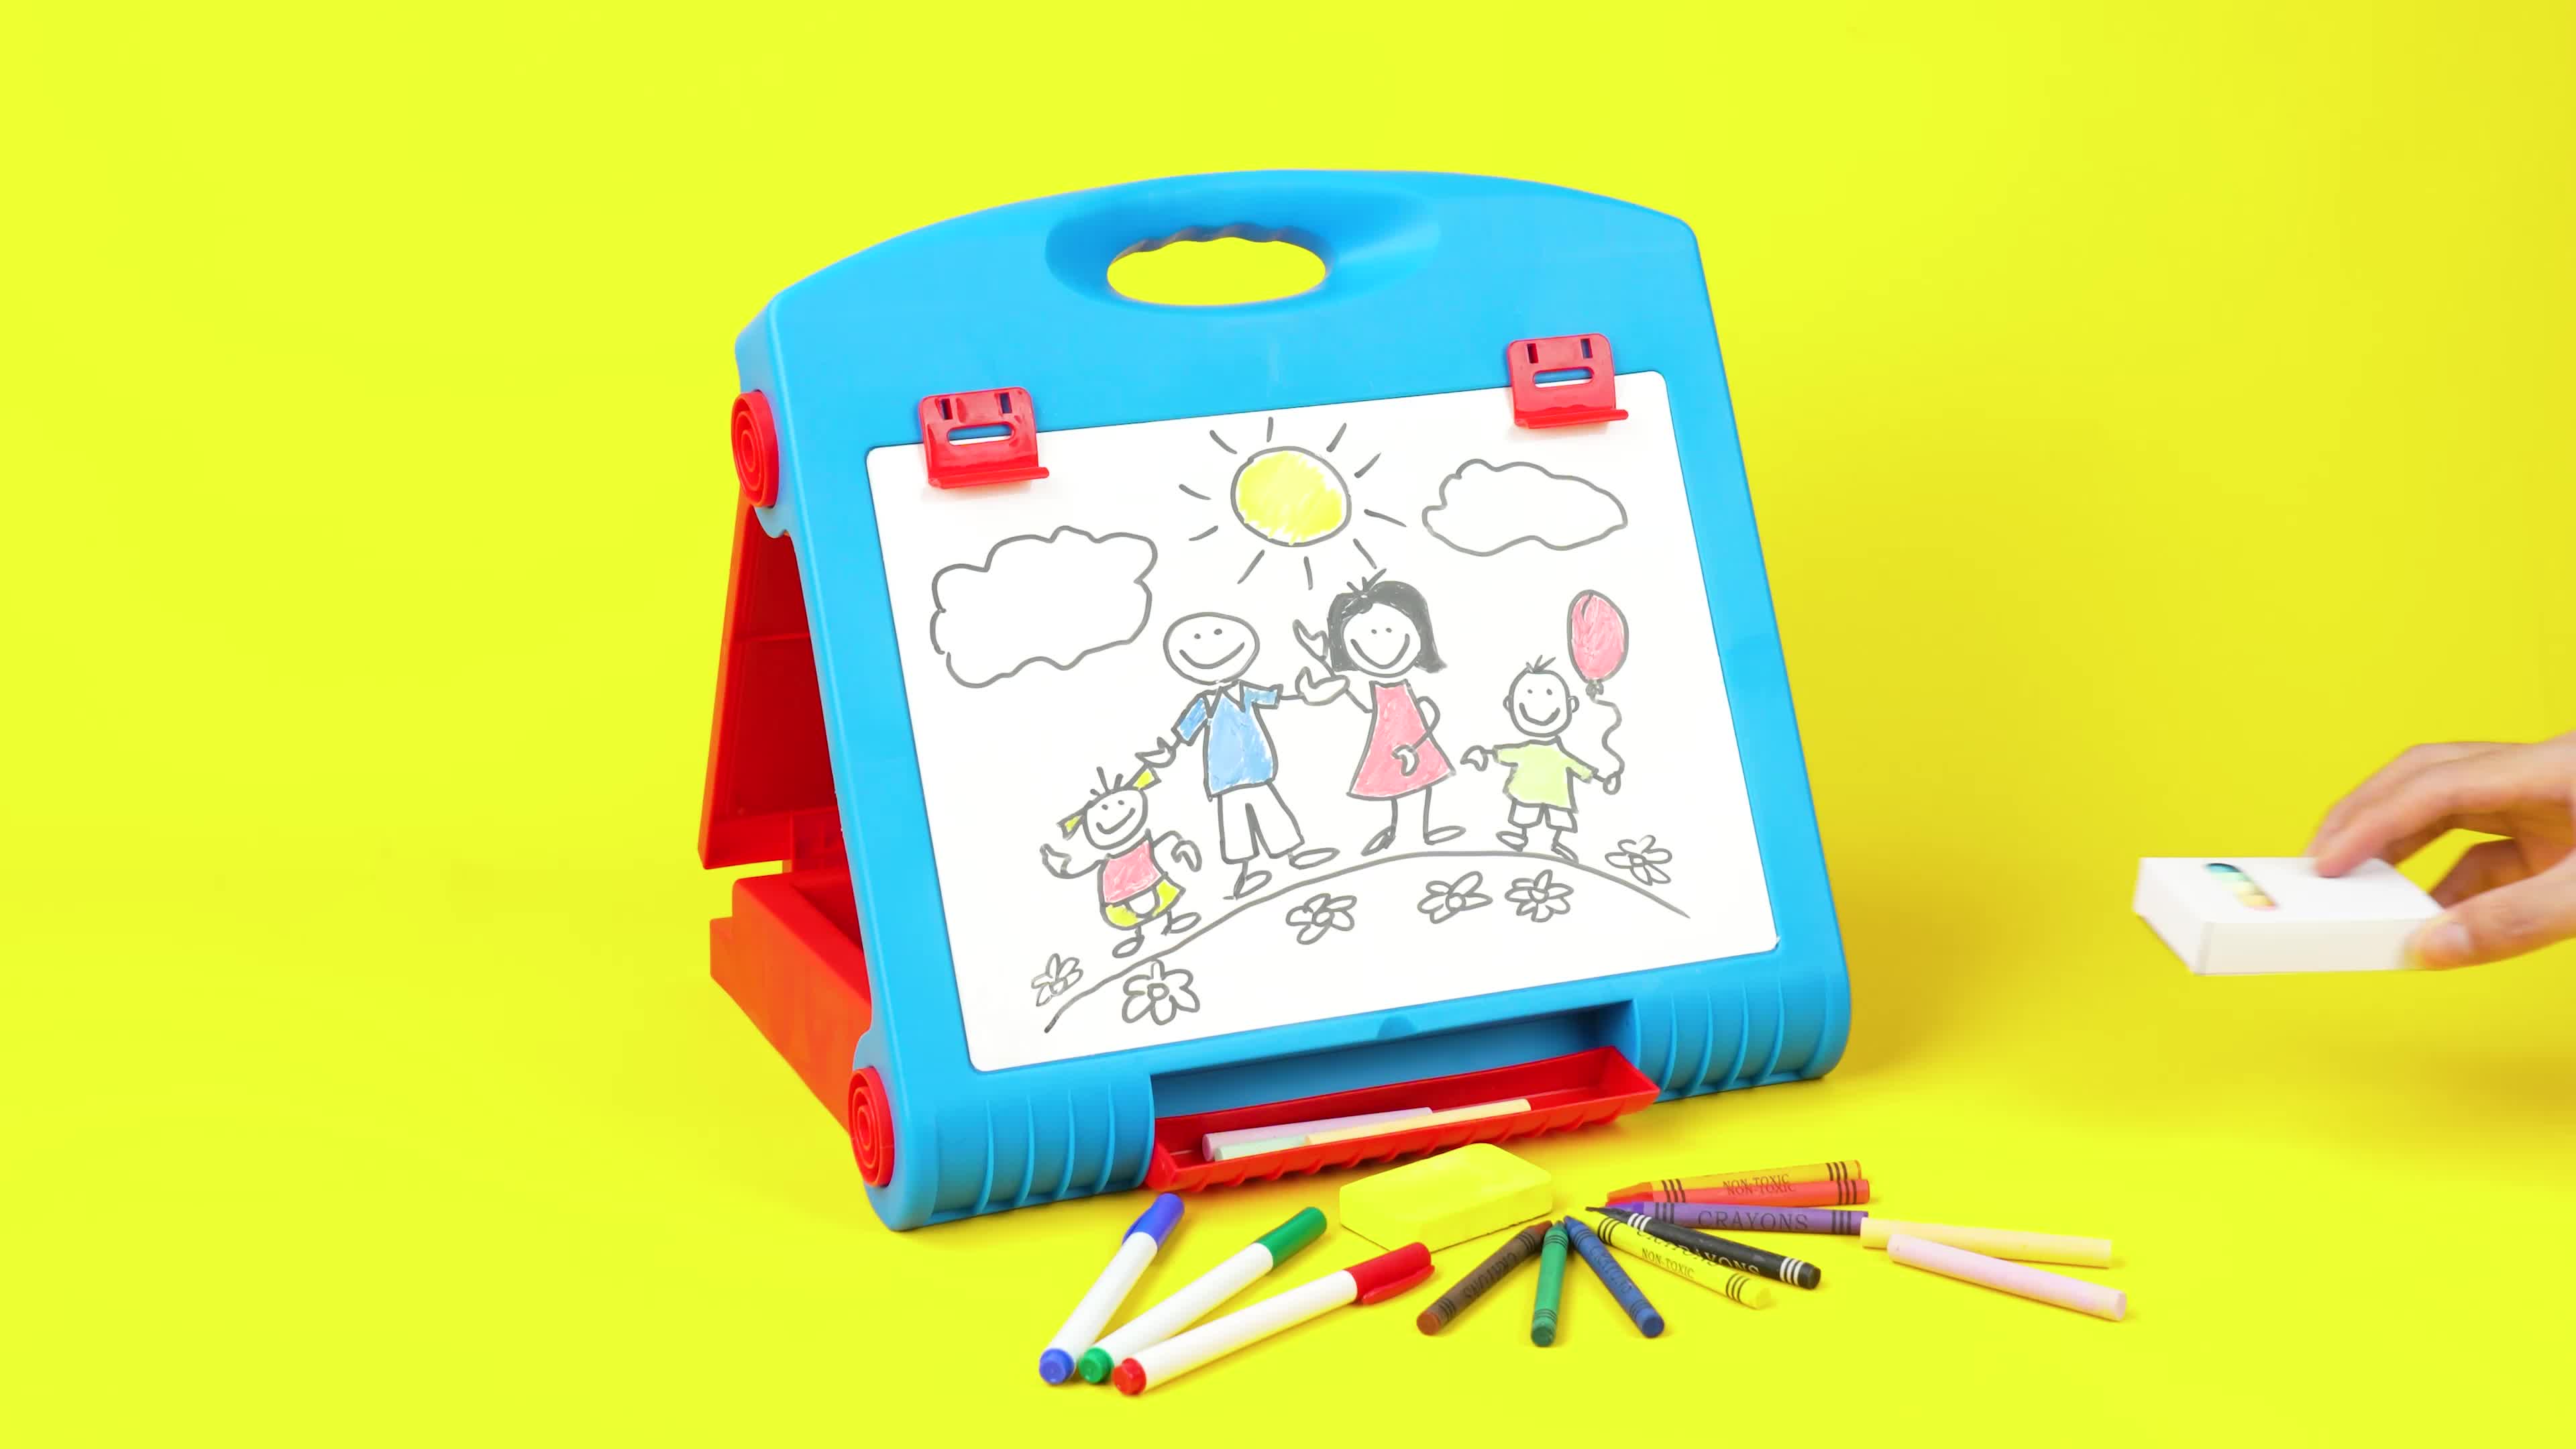 Tabletop Easel For Kids - Art Easel For Toddler - Kids Easel